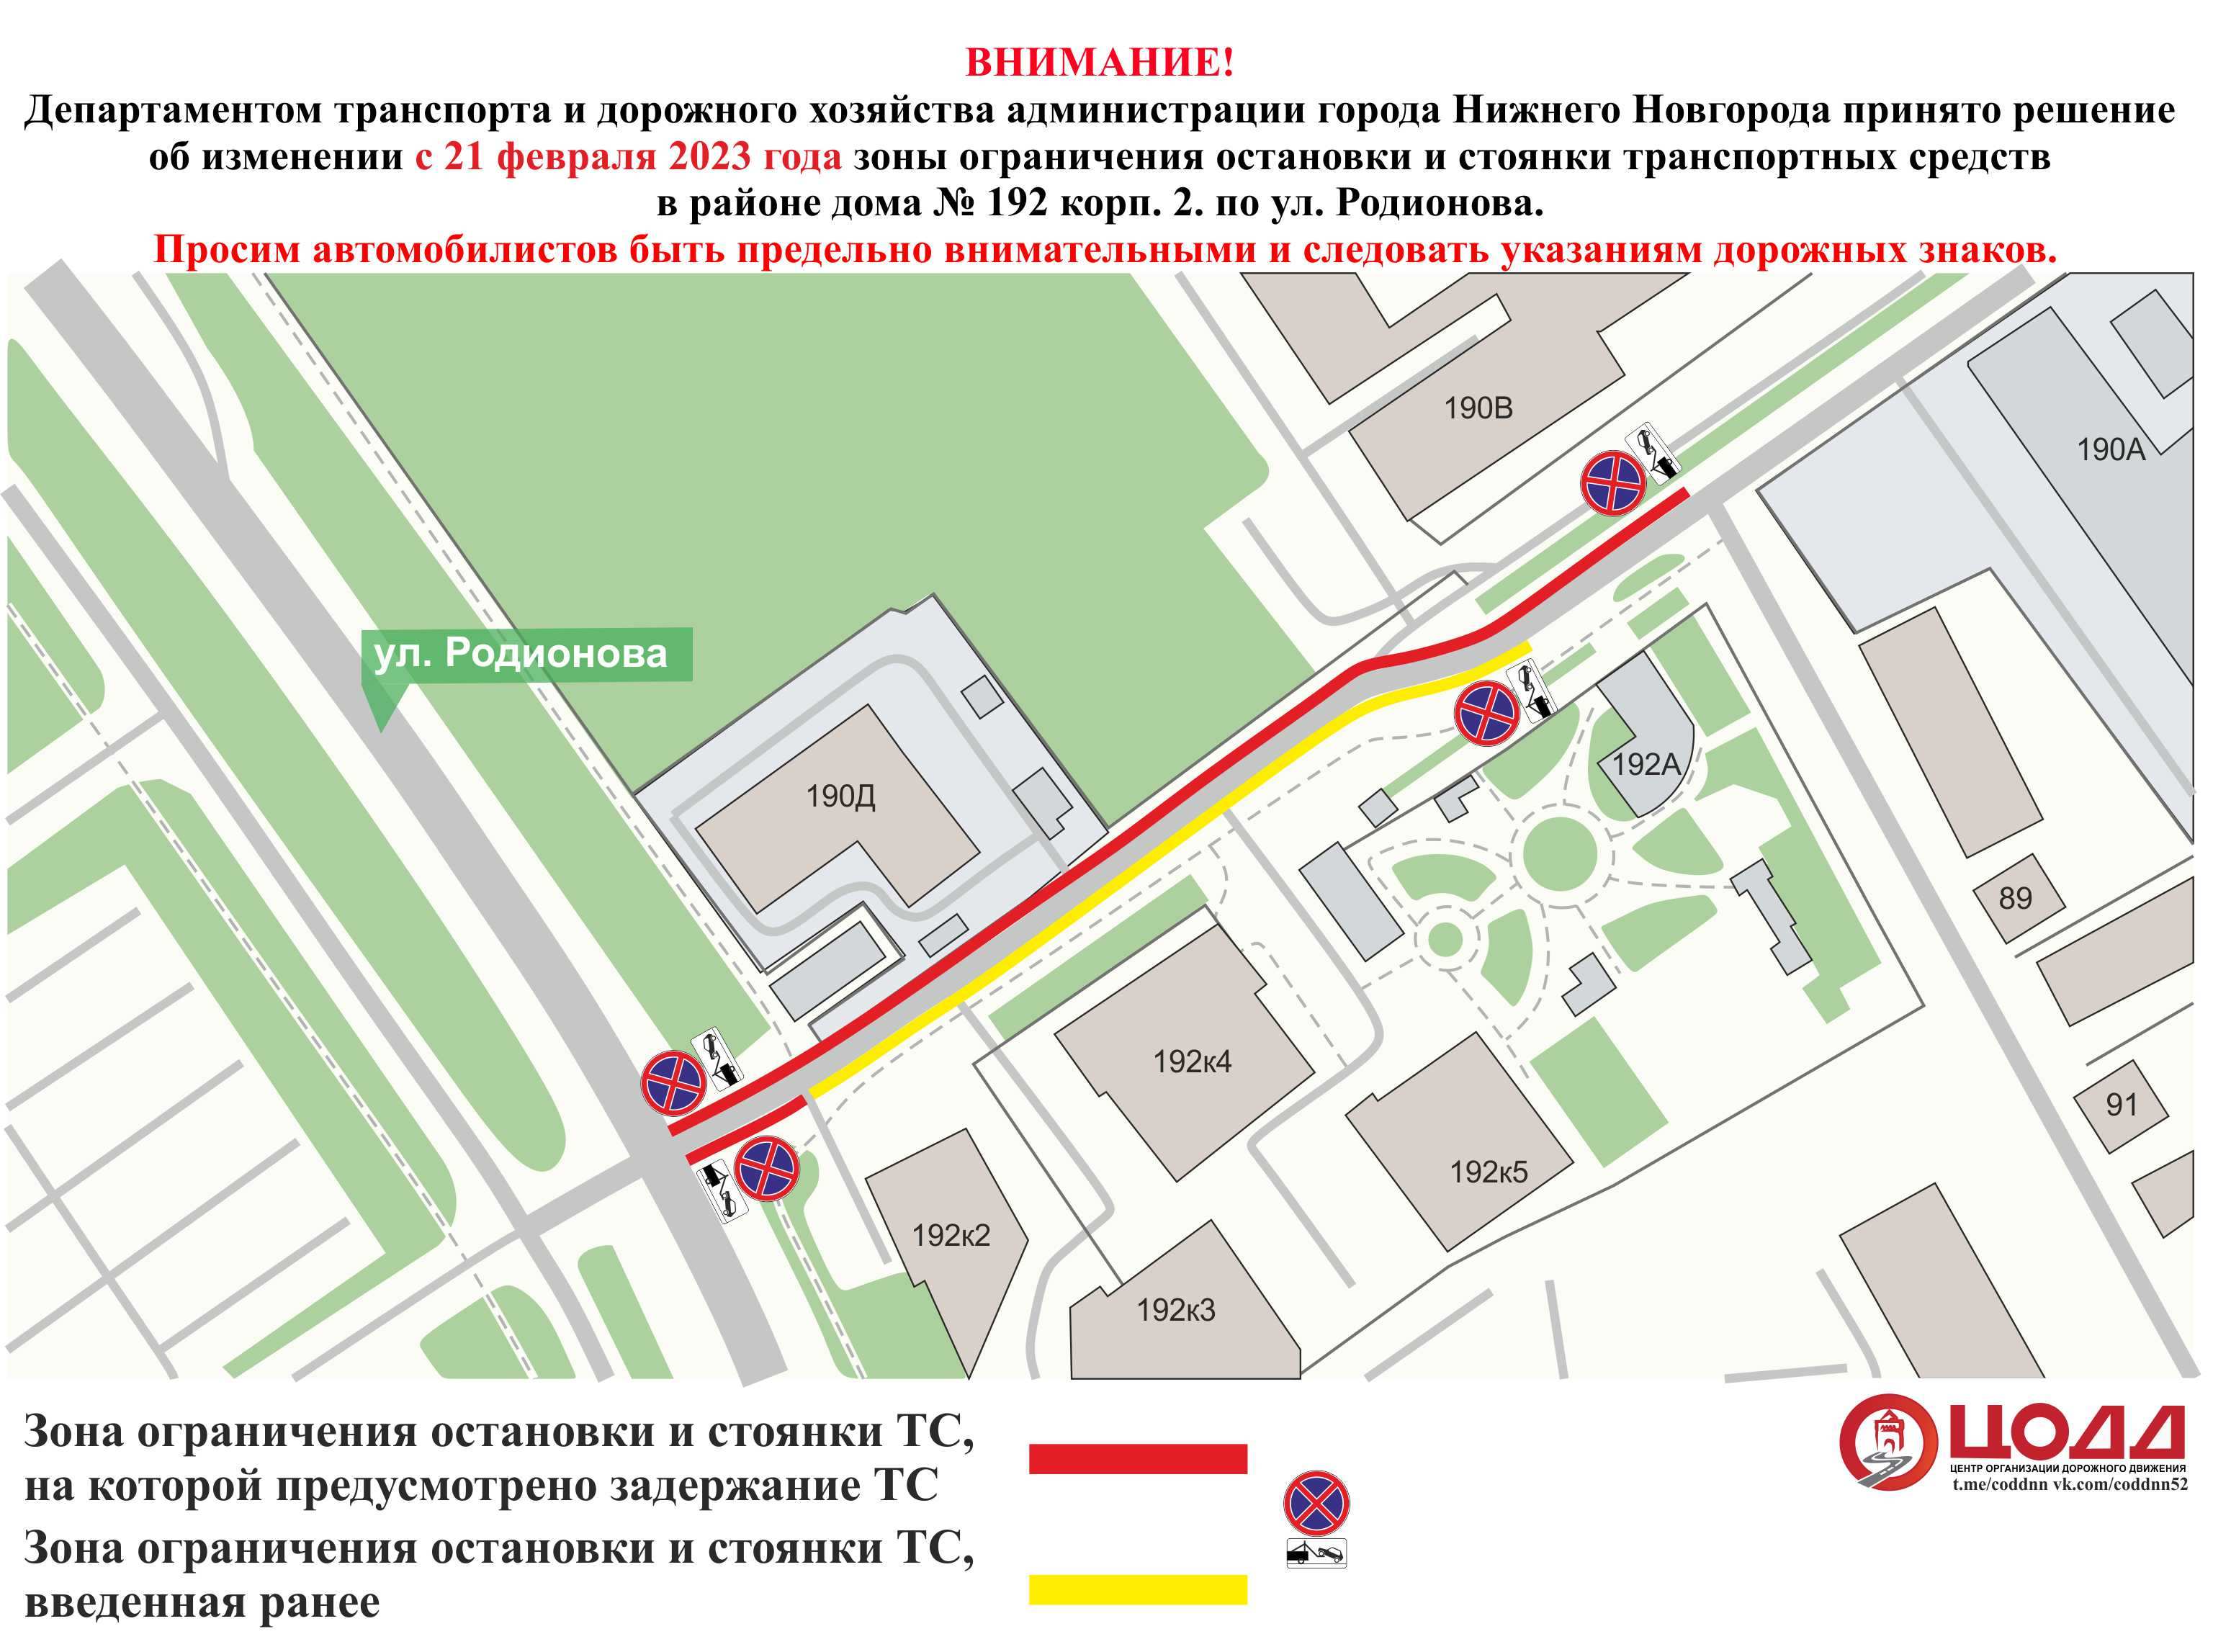 Парковку ограничат на улице Родионова в Нижнем Новгороде с 21 февраля